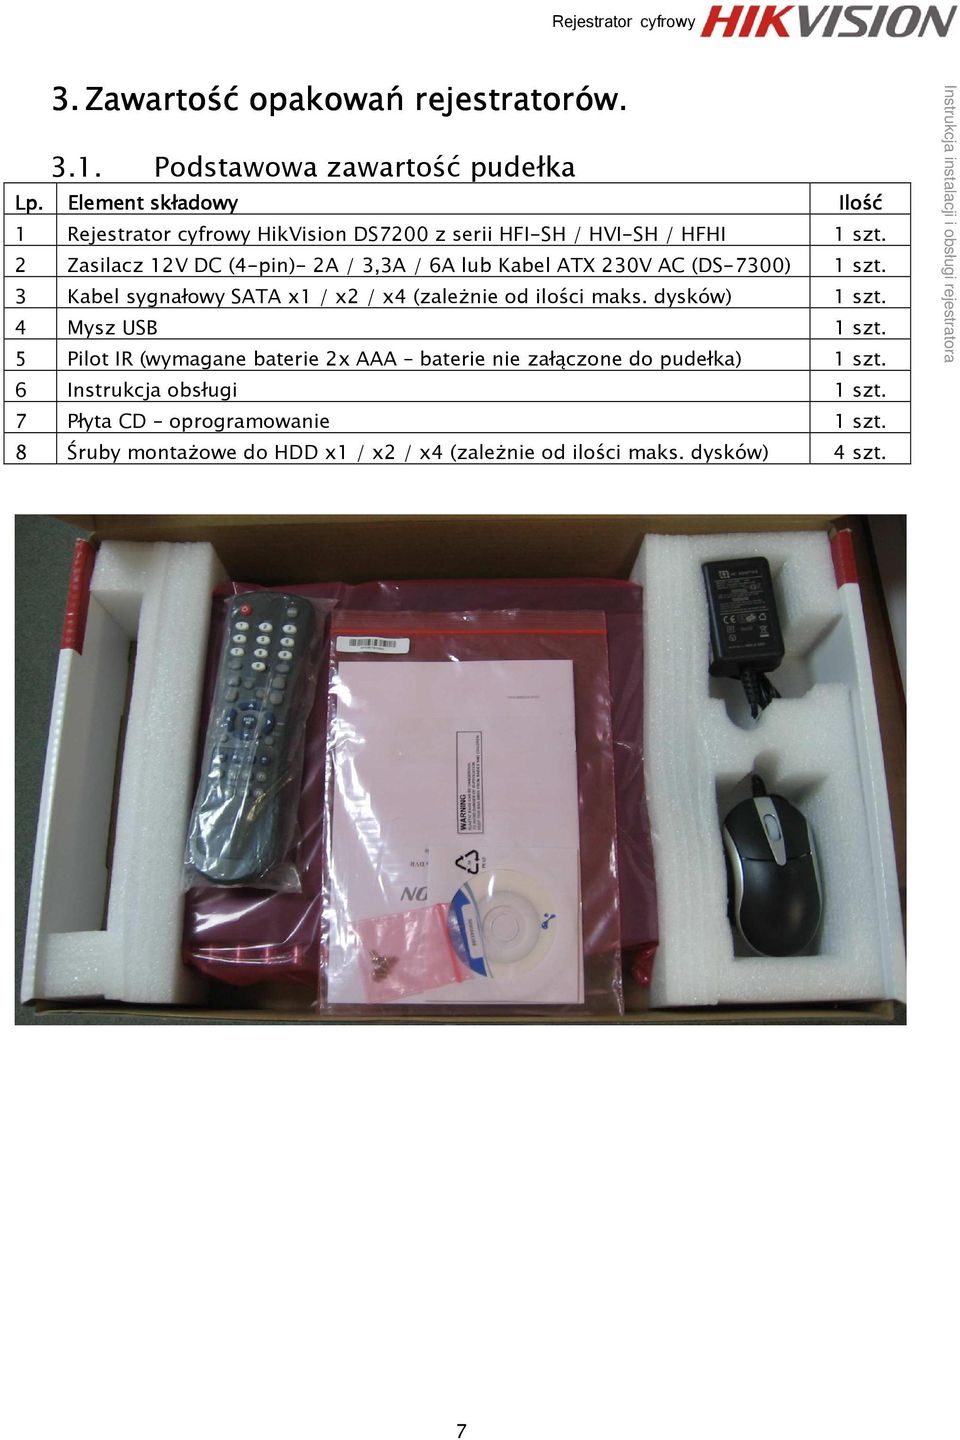 2 Zasilacz 12V DC (4-pin)- 2A / 3,3A / 6A lub Kabel ATX 230V AC (DS-7300) 1 szt. 3 Kabel sygnałowy SATA x1 / x2 / x4 (zależnie od ilości maks.